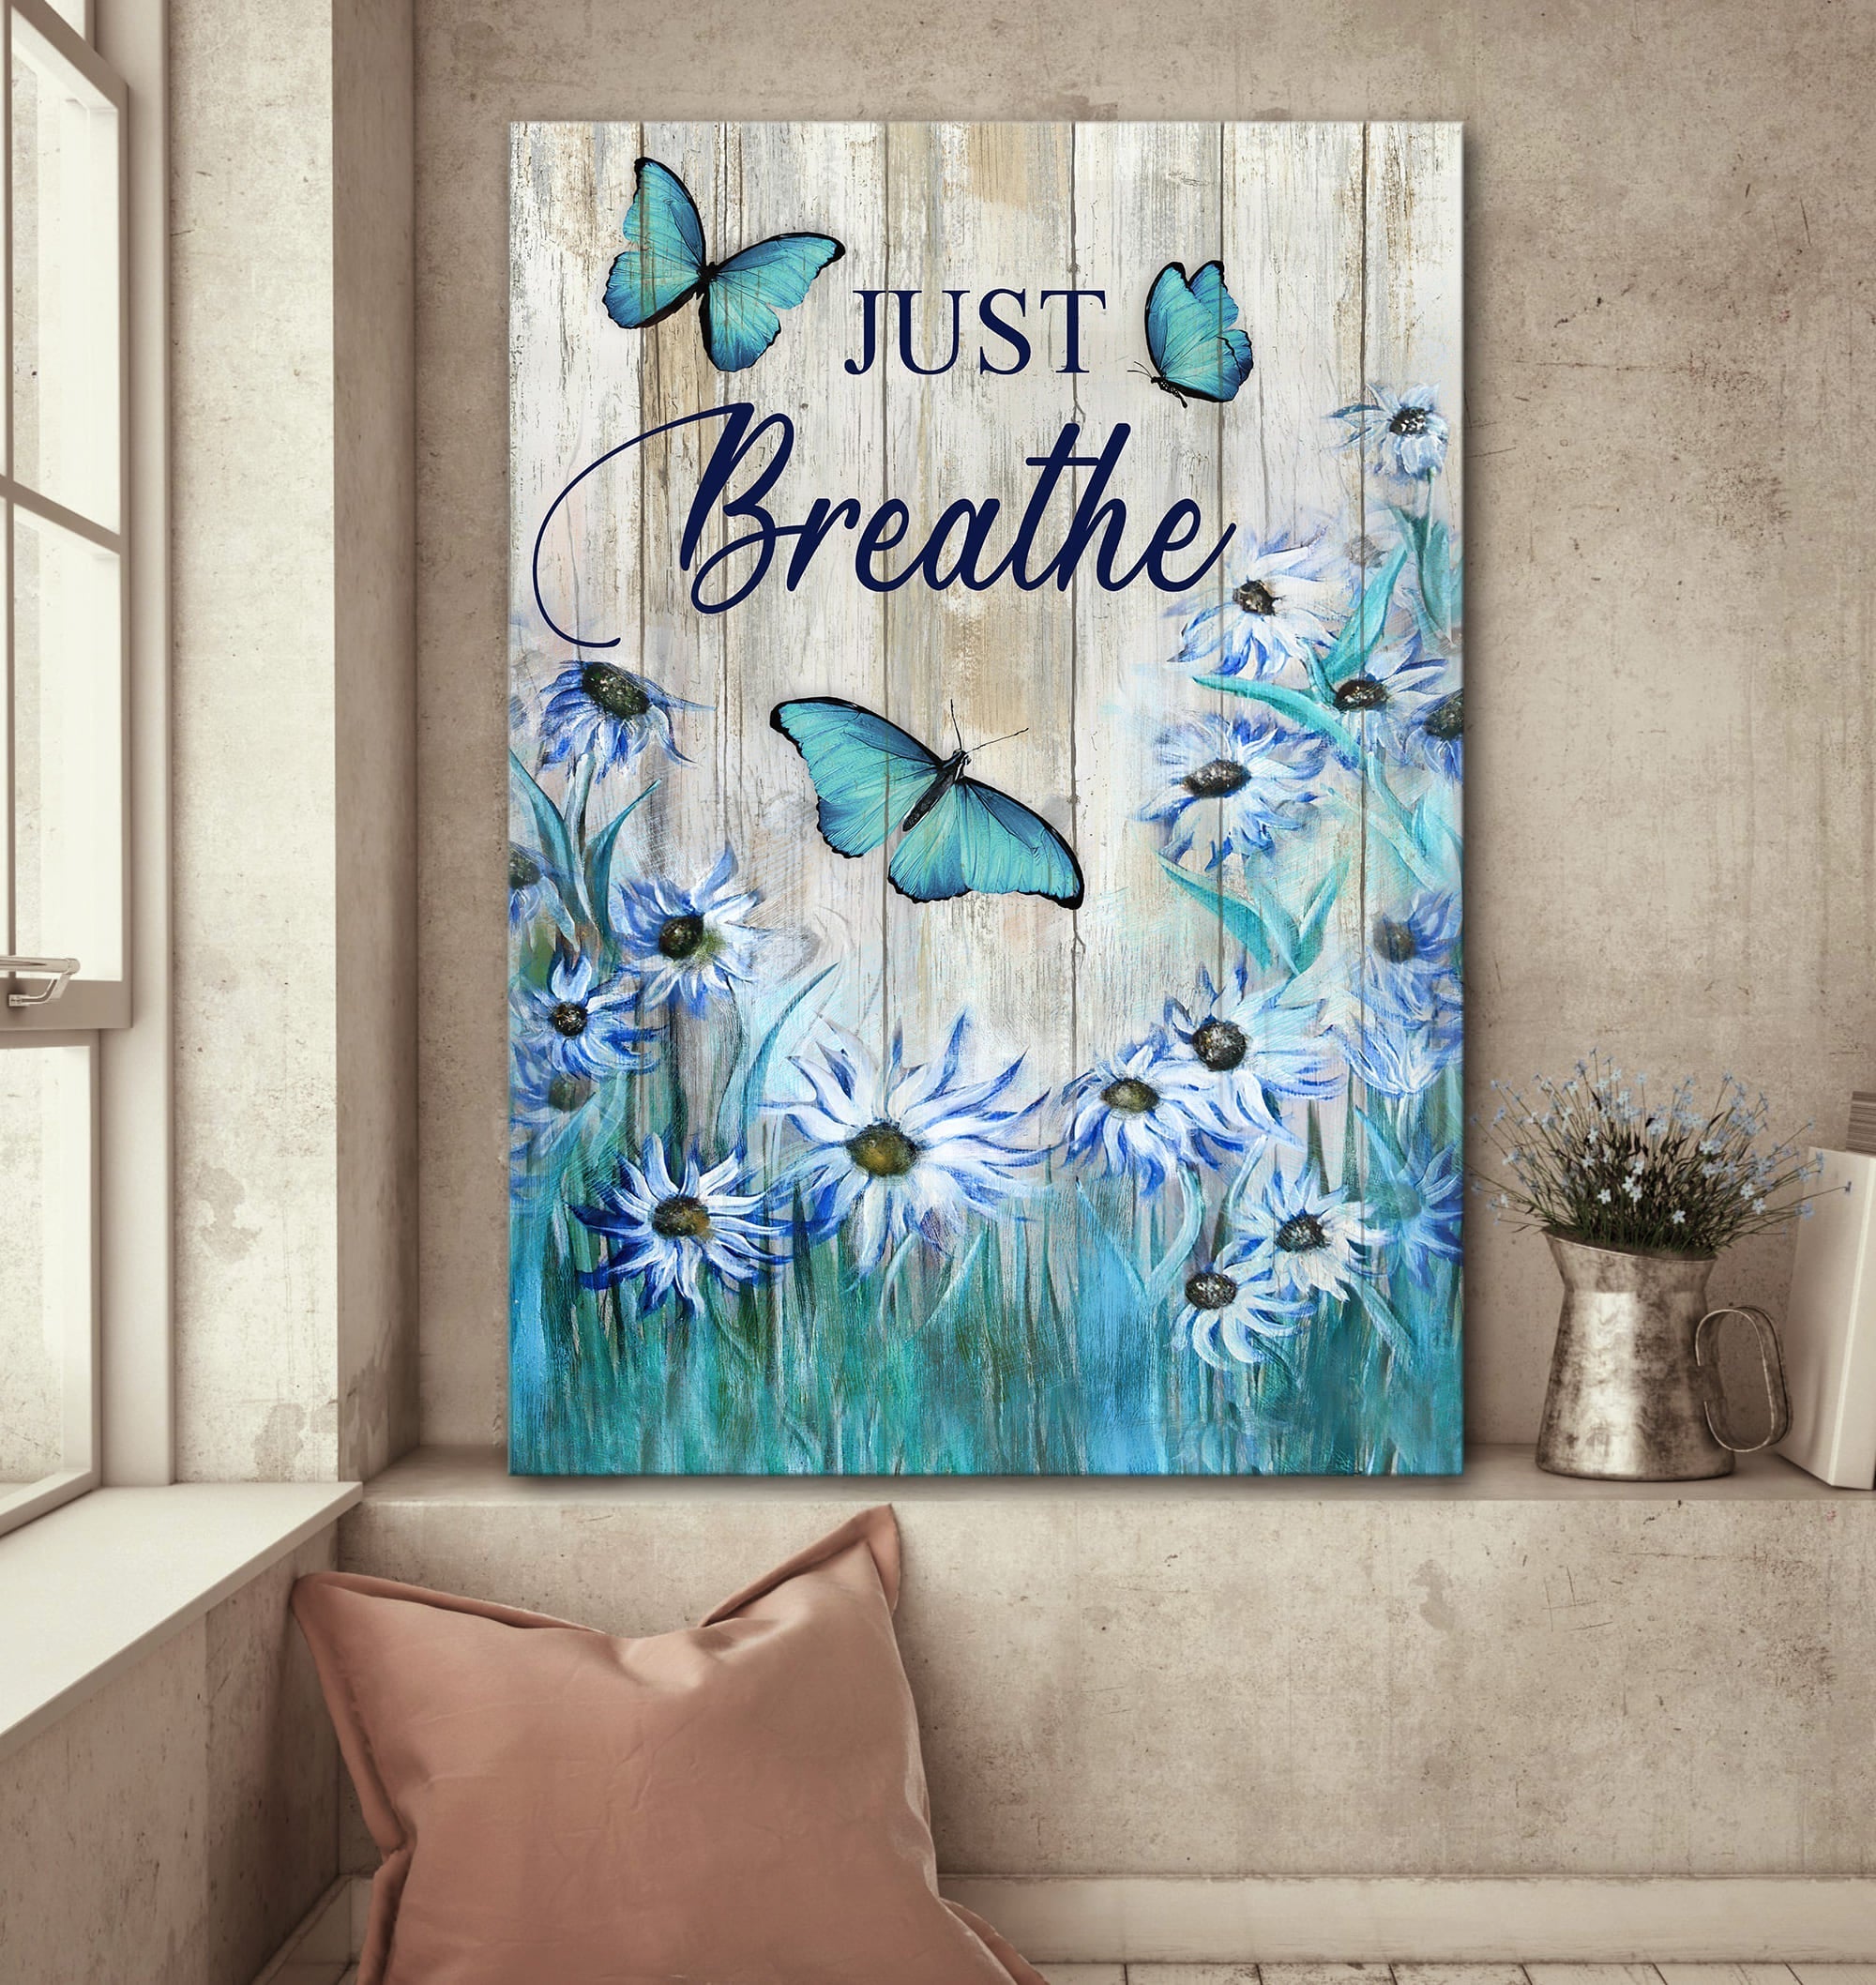 Jesus Portrait Canvas - Blue flower garden, Butterfly painting Portrait Canvas - Gift For Christian - Just breathe Portrait Canvas